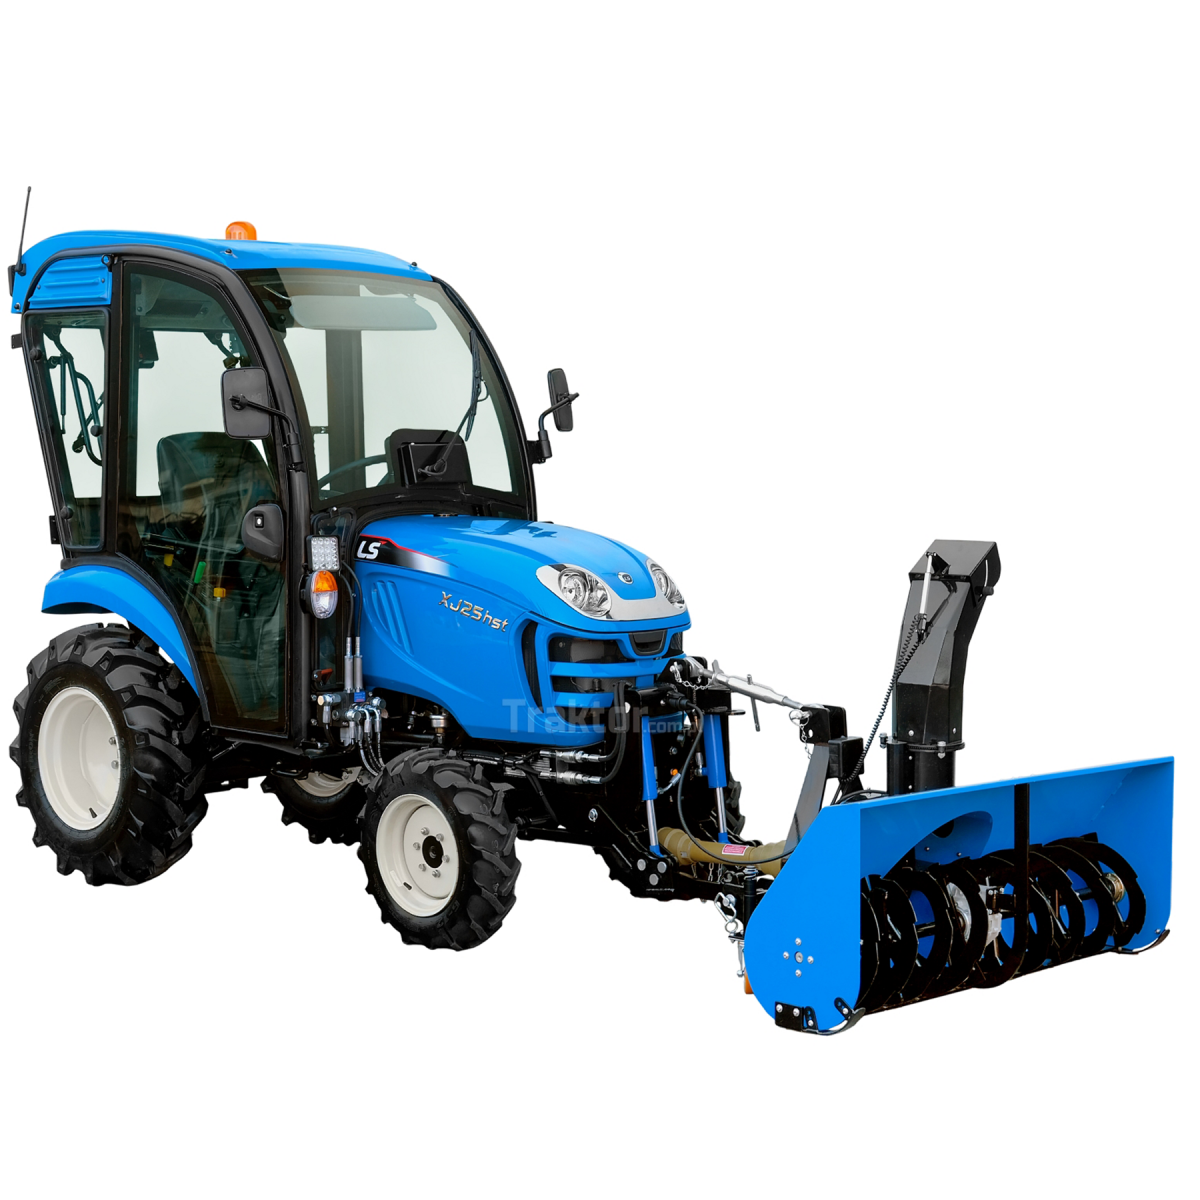 LS-Traktor XJ25 HST 4x4 - 24,4 PS / Kabine + Frontkraftheber 4FARMER + Rotor-Schneefräse für die Vorderseite des 4FARMER-Traktor